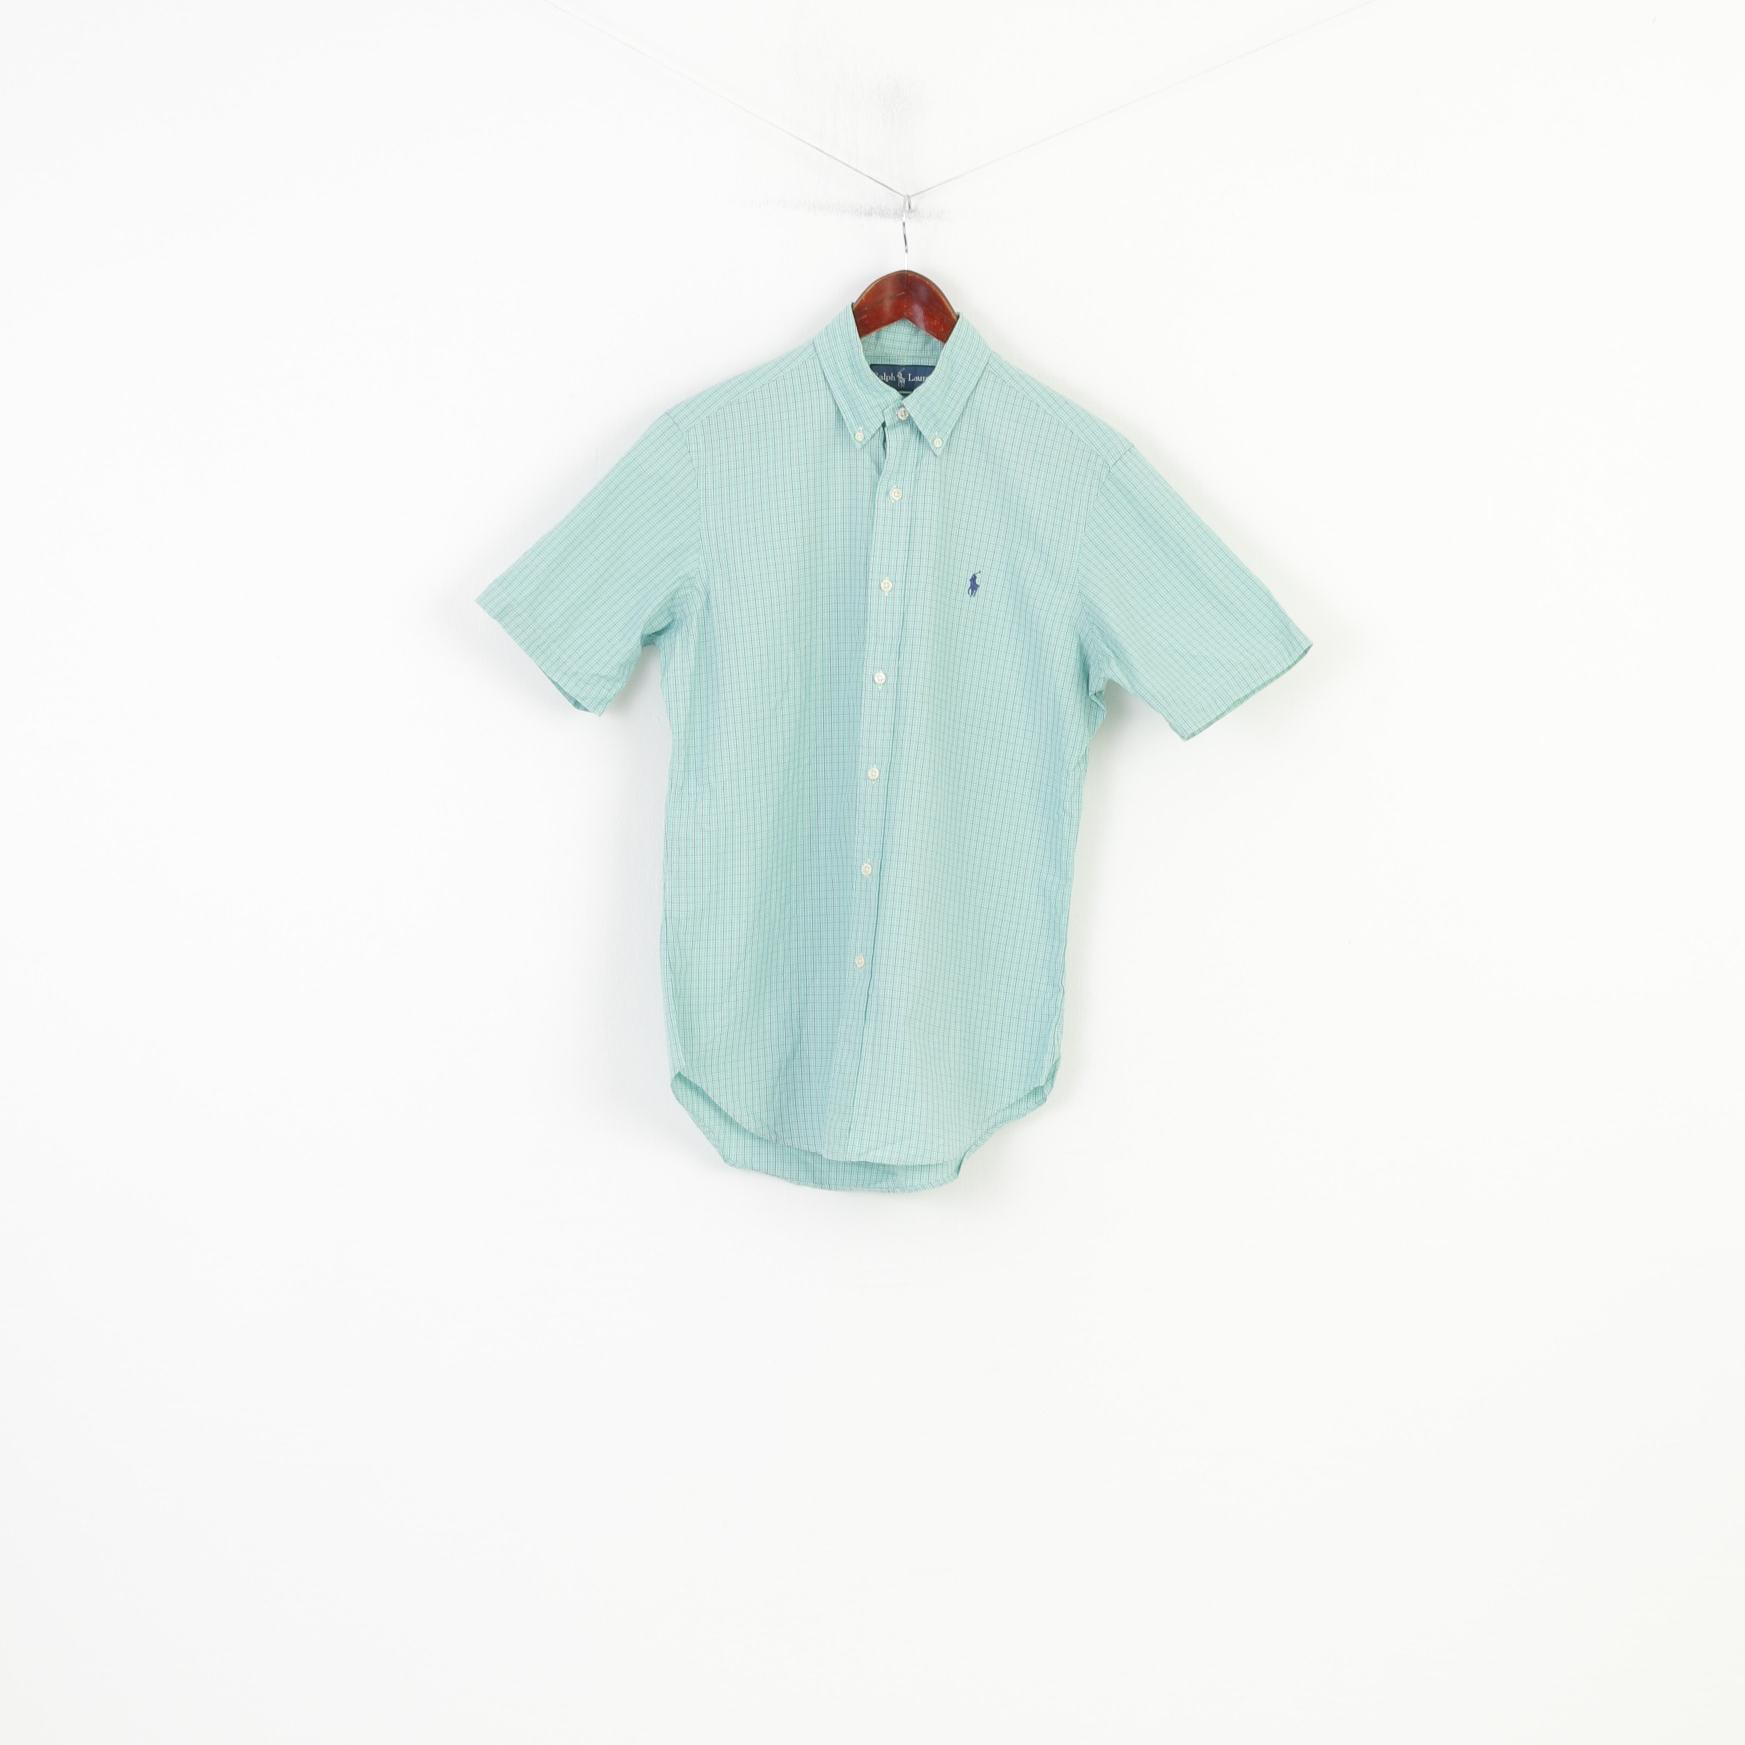 Ralph Lauren Men S Casual Shirt Short Sleeve Checkered Fit Green Top